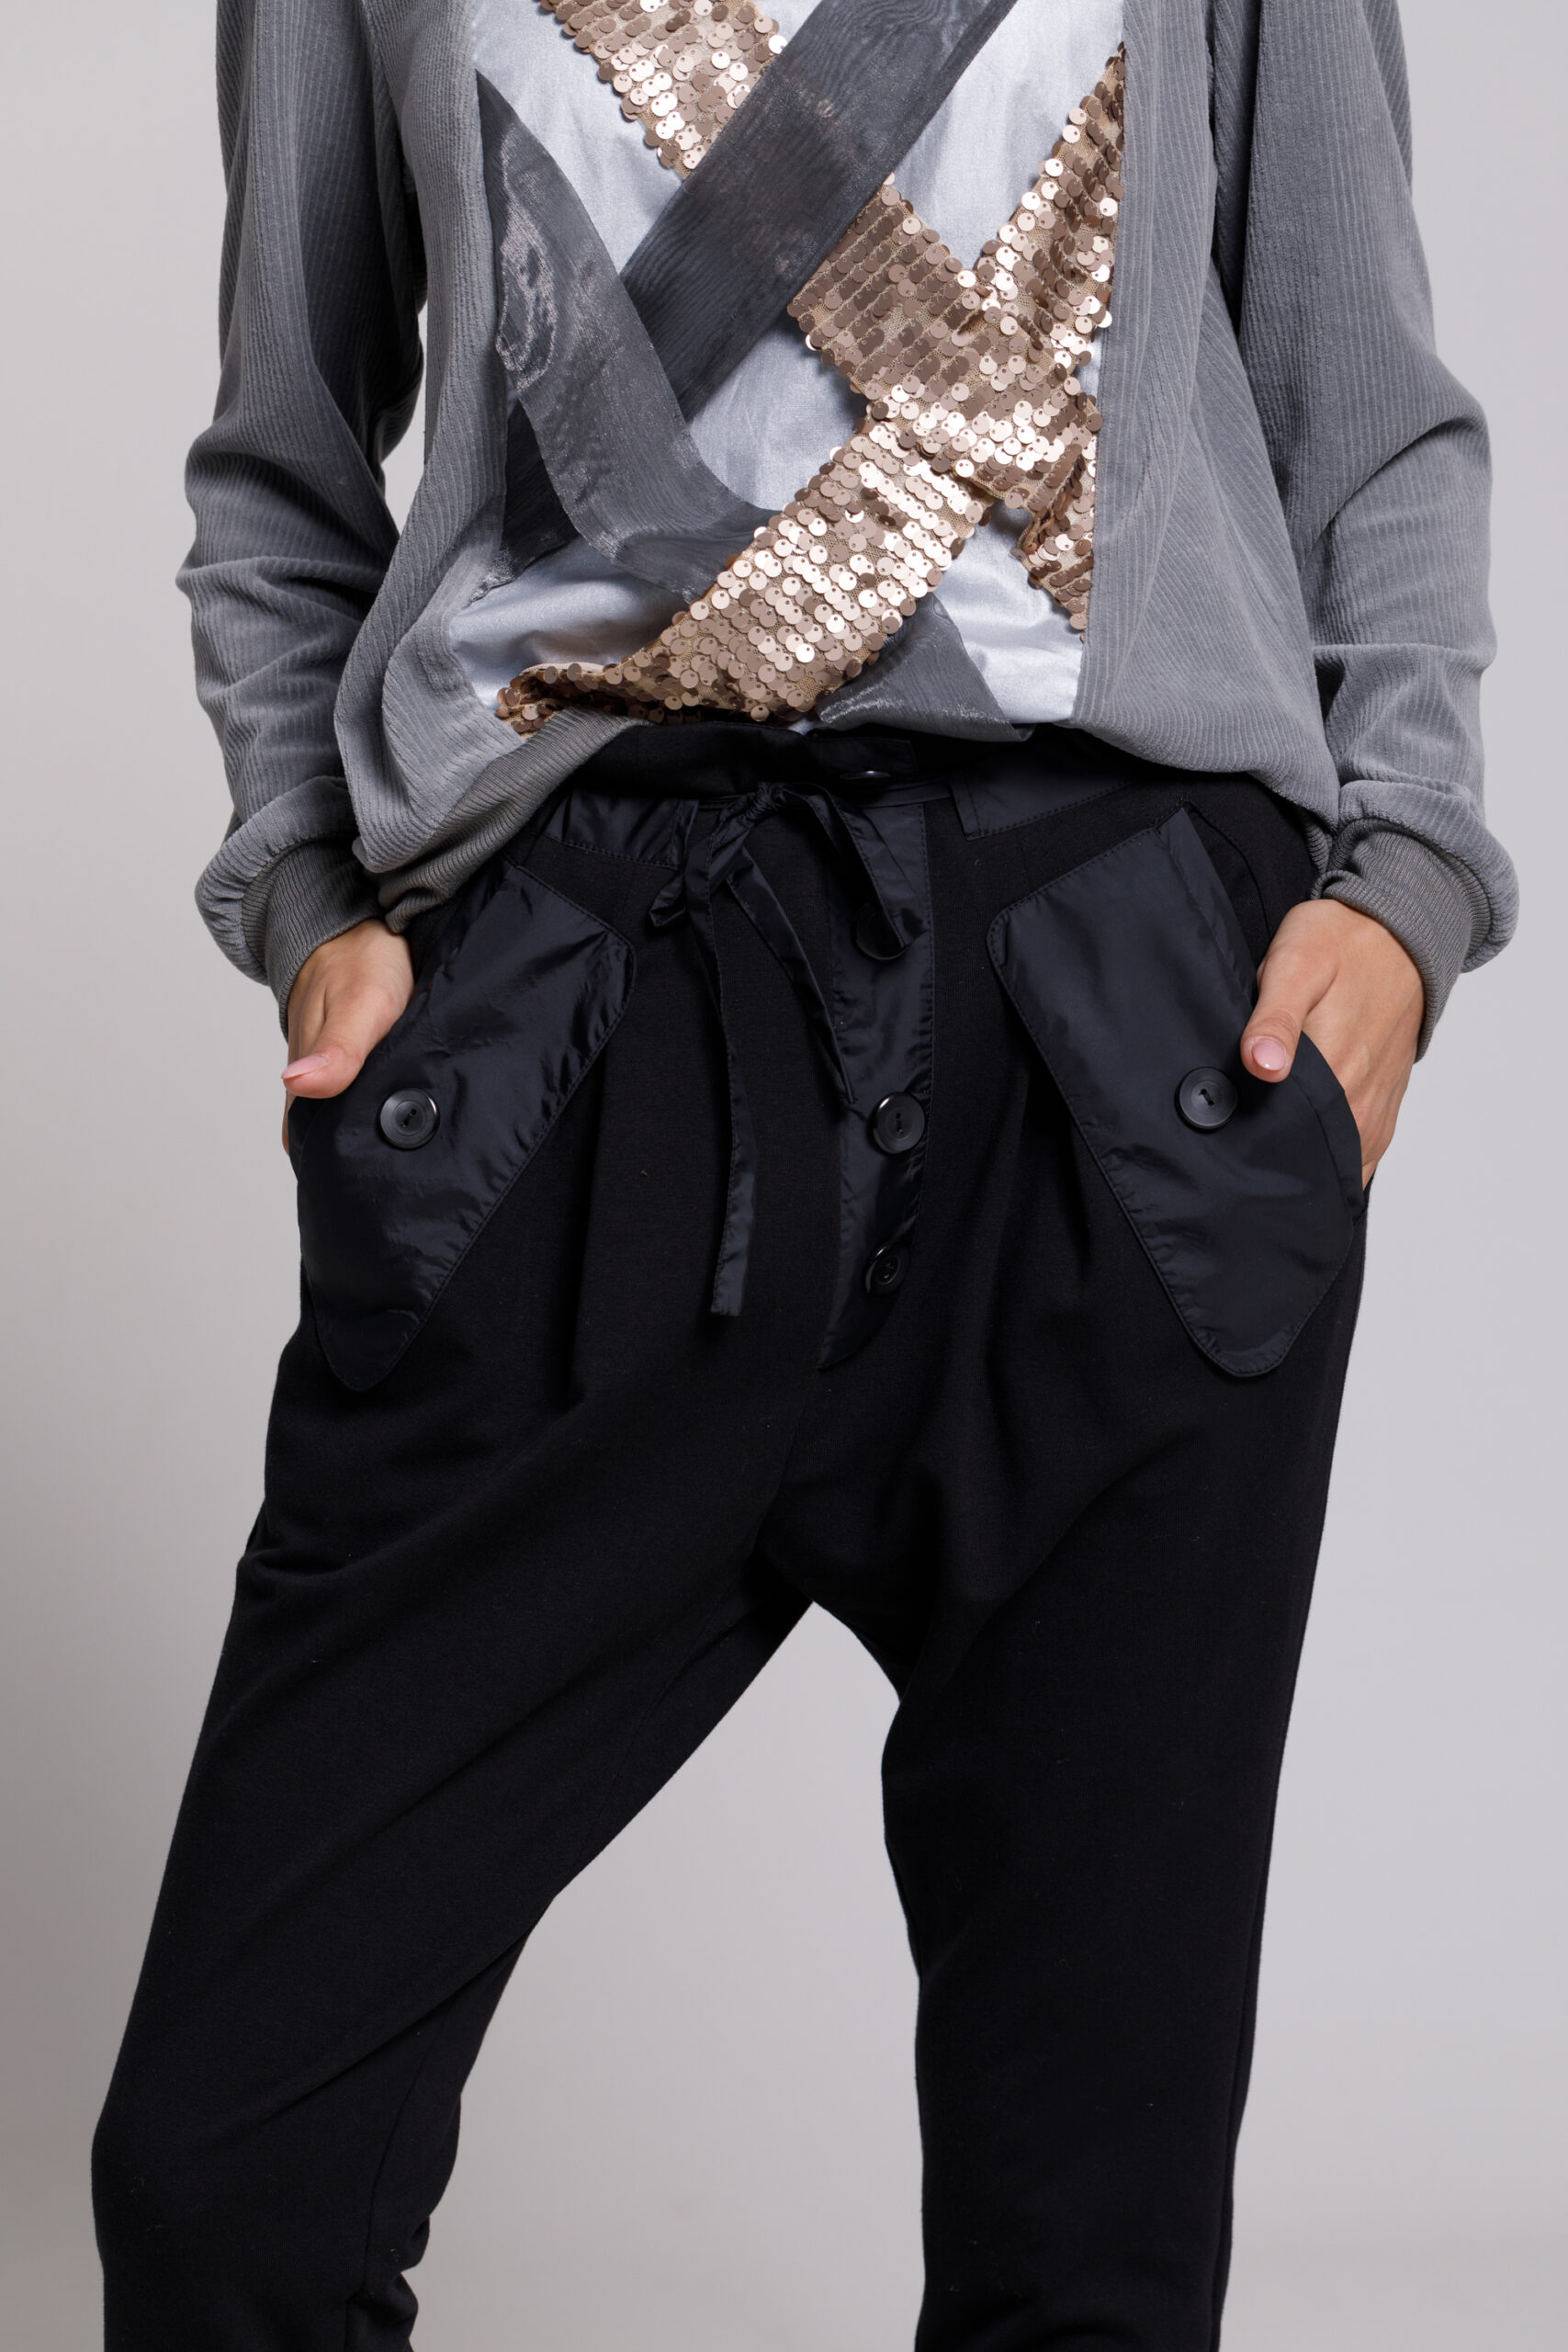 Pantalon NYO casual negru din felpa cu buzunare si clapa. Materiale naturale, design unicat, cu broderie si aplicatii handmade